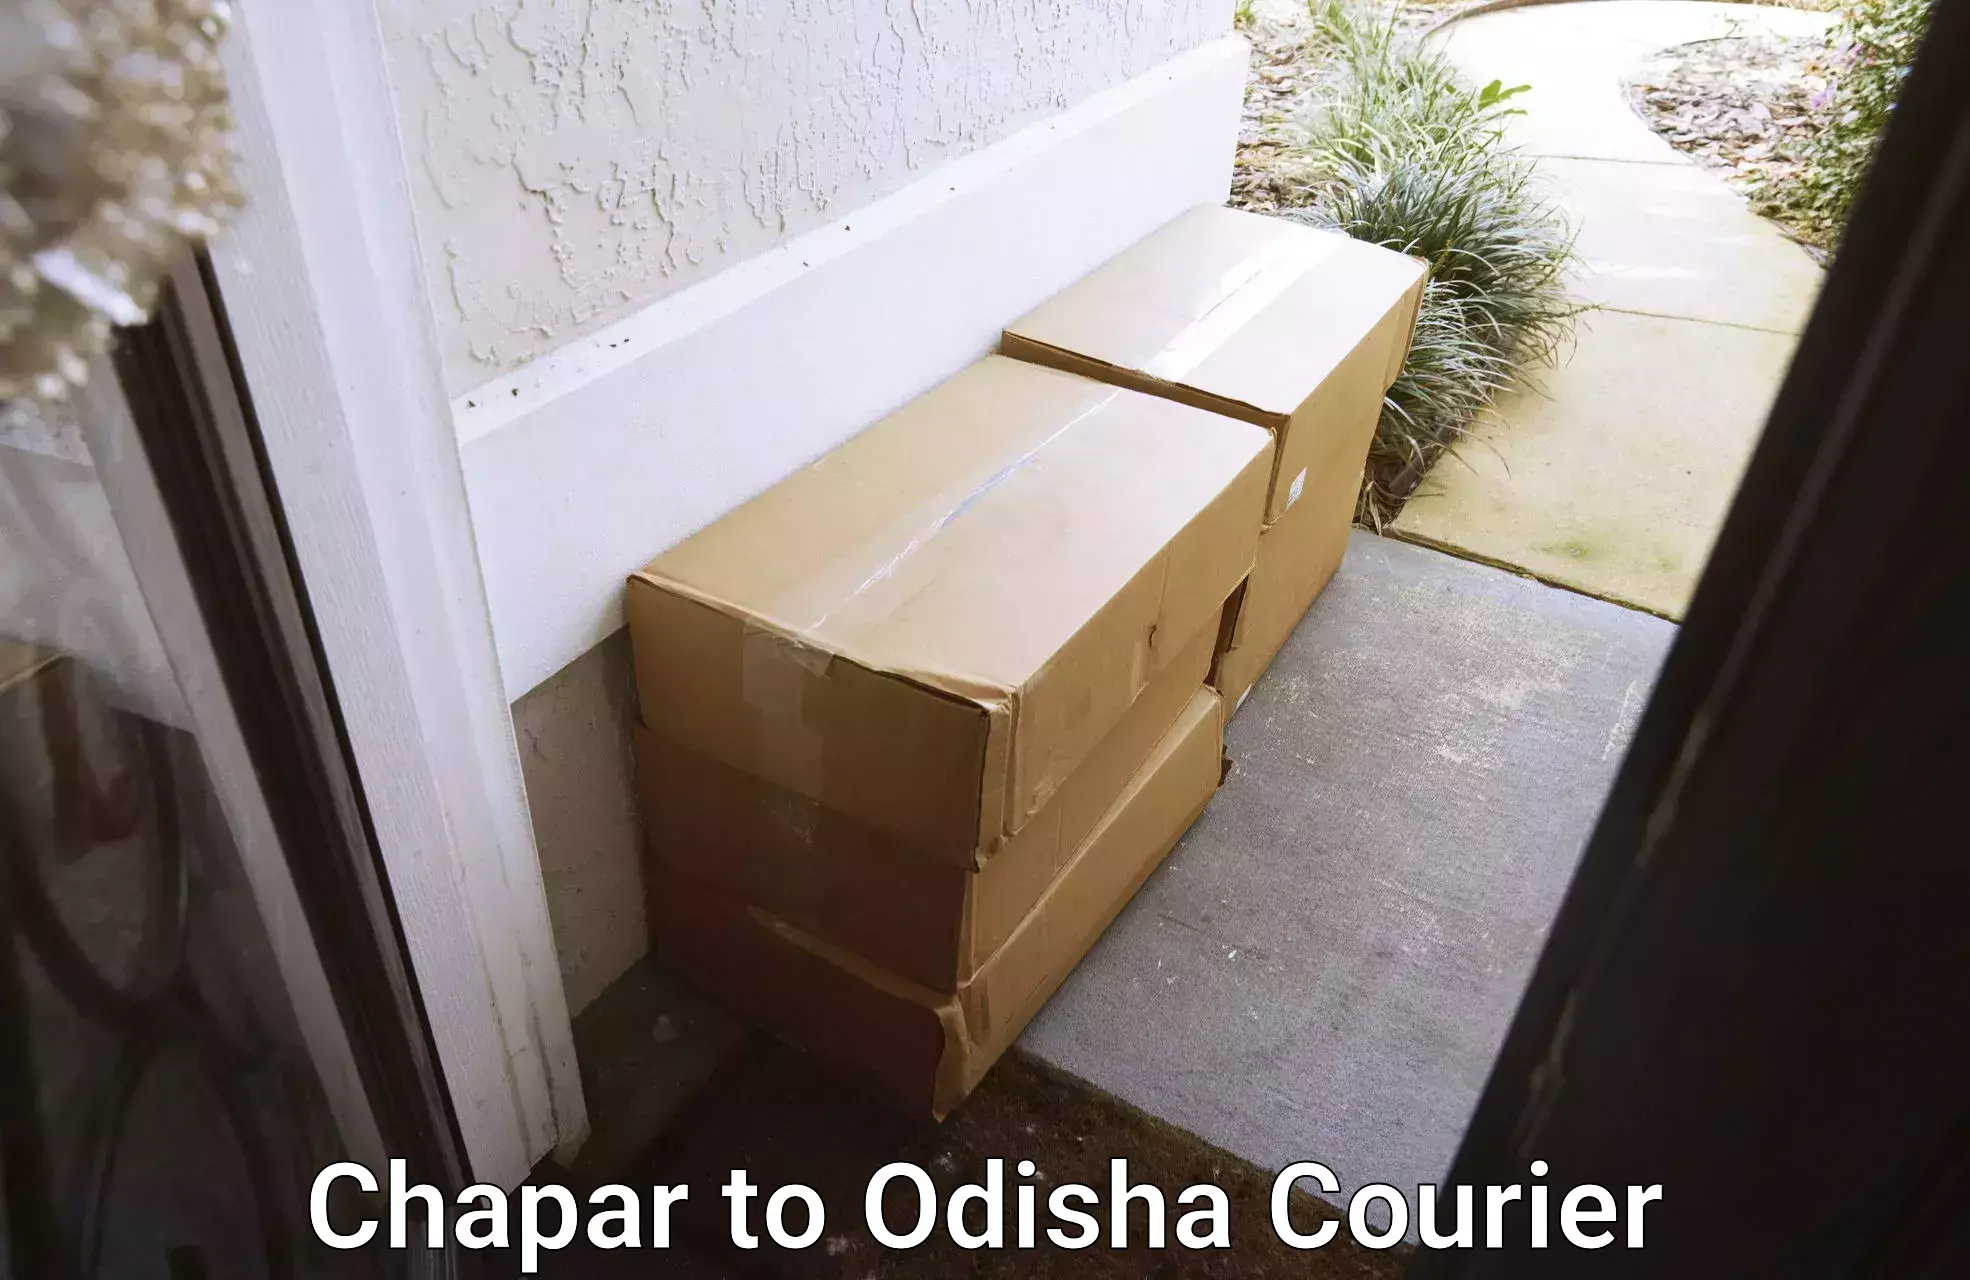 Urgent courier needs in Chapar to Balijhari